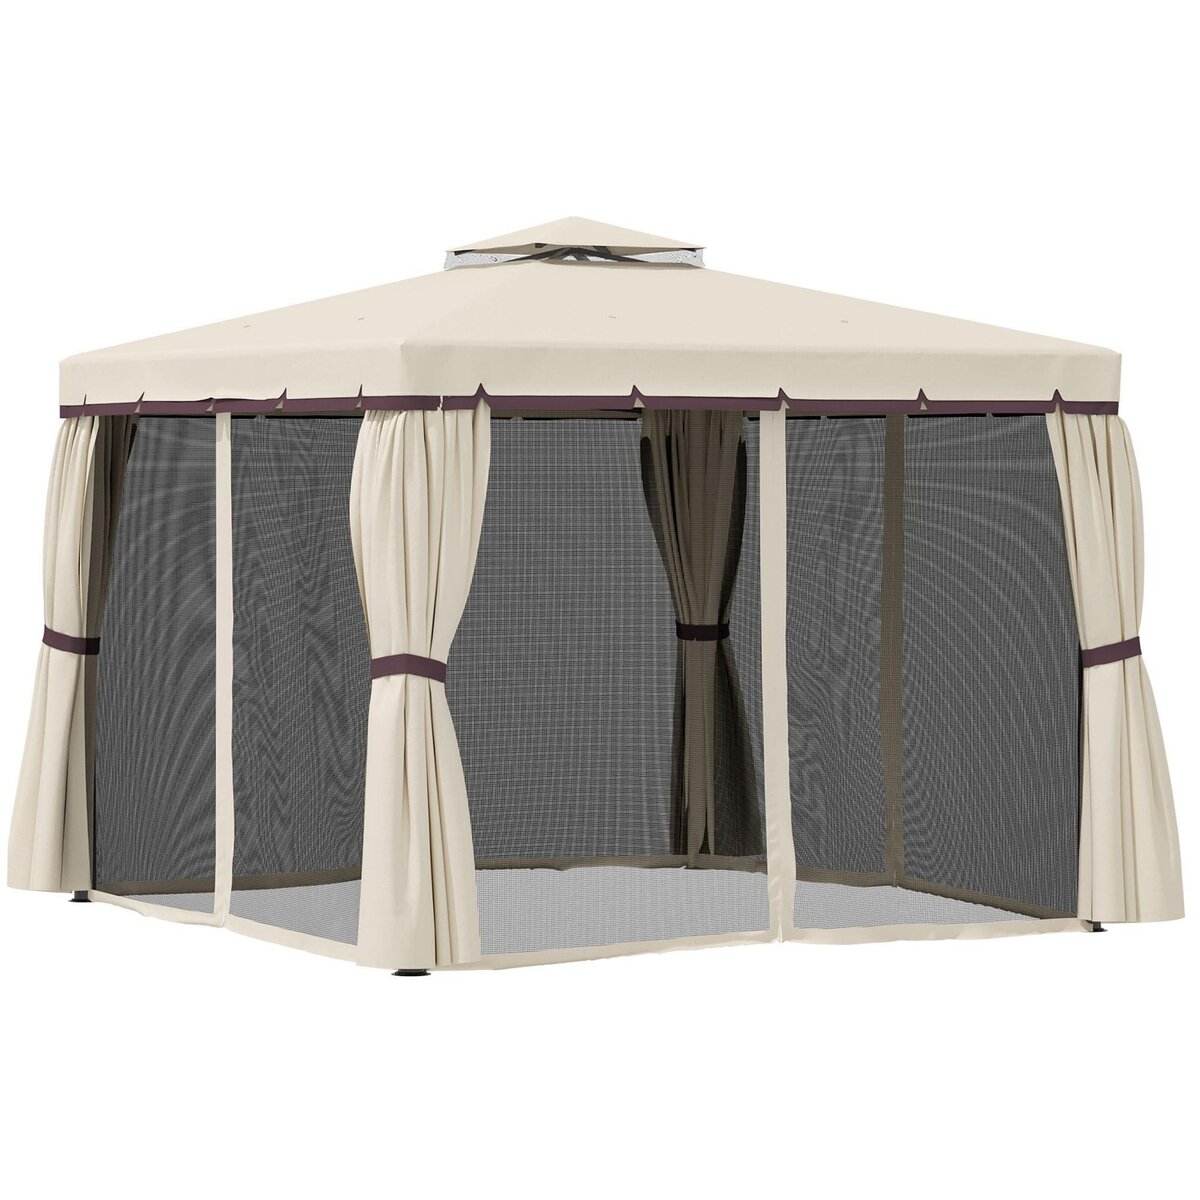 Toile de rechange pour pavillon tonnelle tente 296 x 296 cm polyester haute  densité - 4 rideaux et 4 moustiquaires - beige